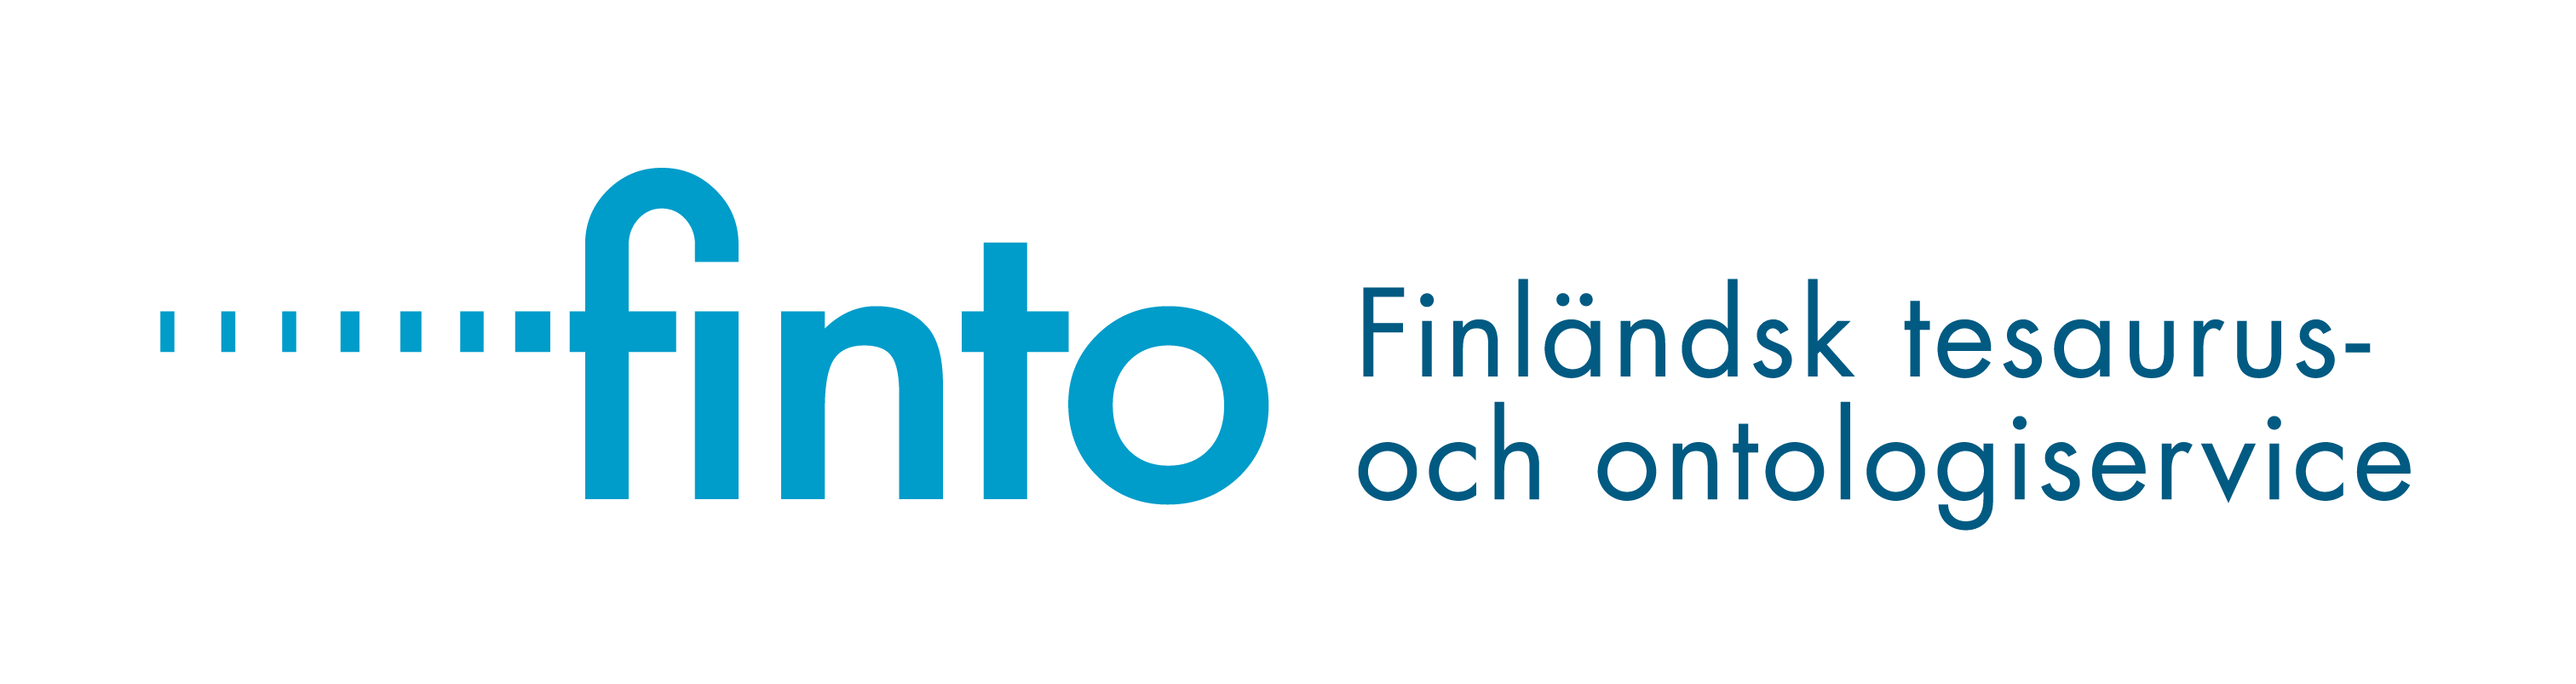 Finto - Finländsk tesaurus- och ontologiservice